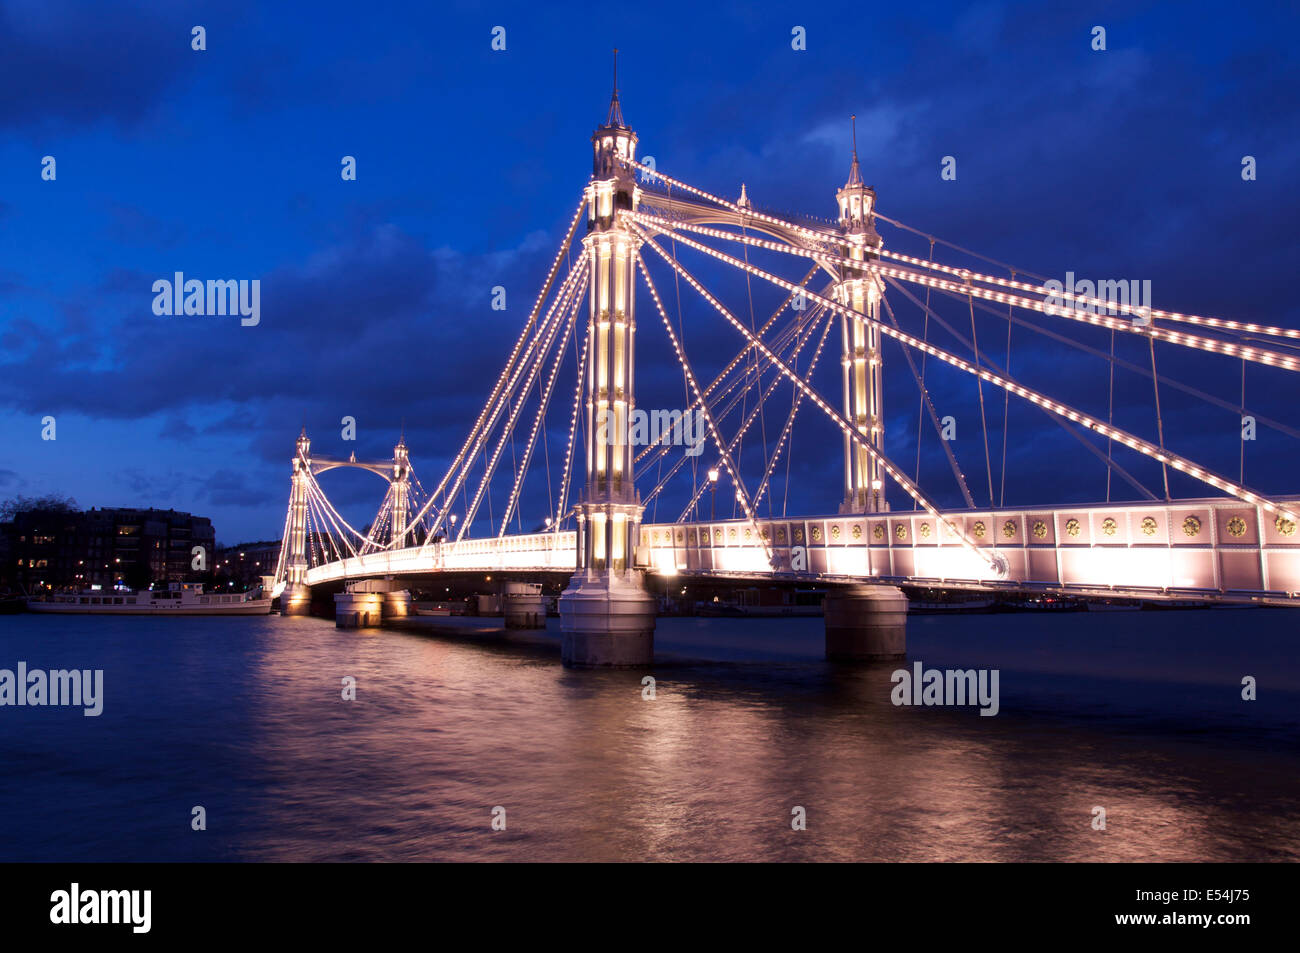 La lumineuse splendeur victorienne d'Albert Bridge, allumé à la tombée de la nuit, en traversant la Tamise entre Battersea et Chelsea. Londres, Angleterre, Royaume-Uni. Banque D'Images